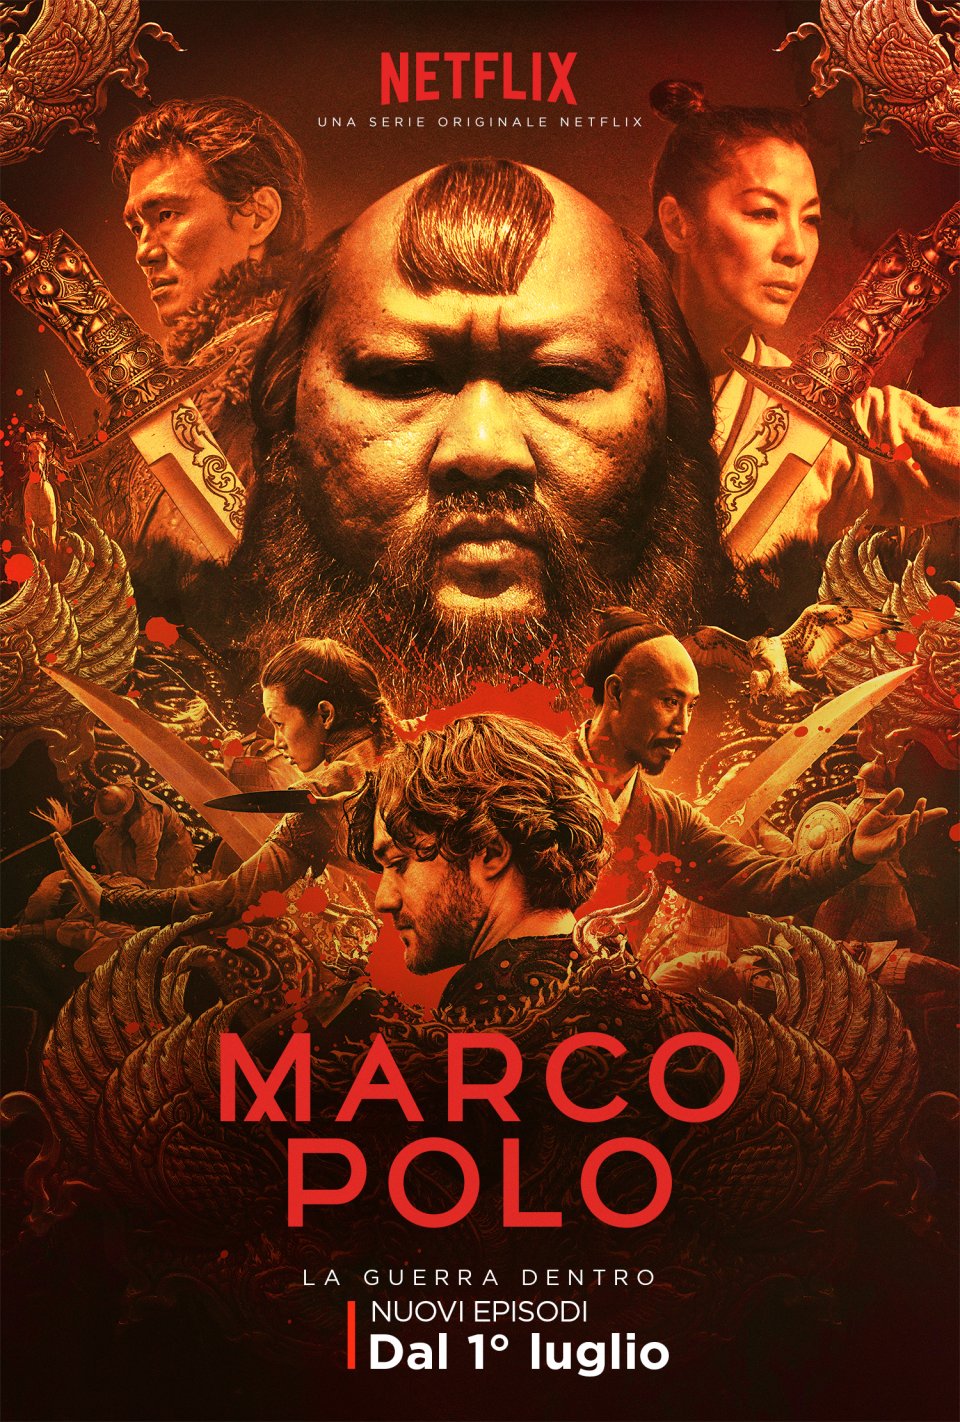 Marco Polo 2: la locandina della nuova stagione della serie Netflix